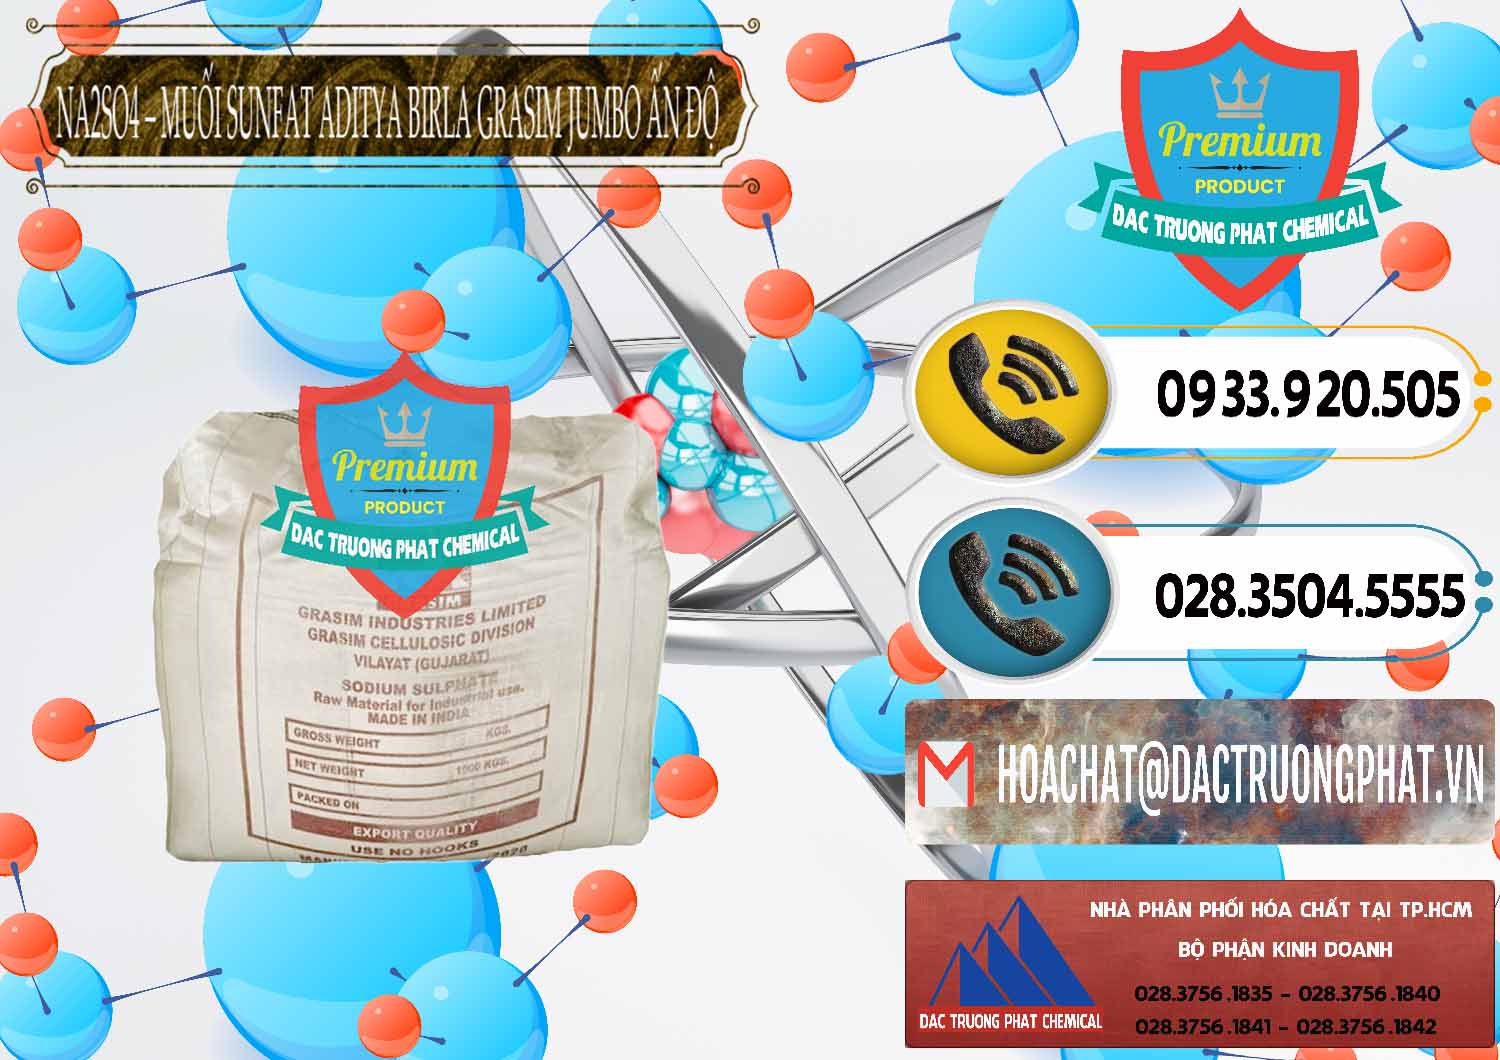 Nơi kinh doanh và bán Sodium Sulphate - Muối Sunfat Na2SO4 Jumbo Bành Aditya Birla Grasim Ấn Độ India - 0357 - Cty chuyên nhập khẩu - phân phối hóa chất tại TP.HCM - hoachatdetnhuom.vn